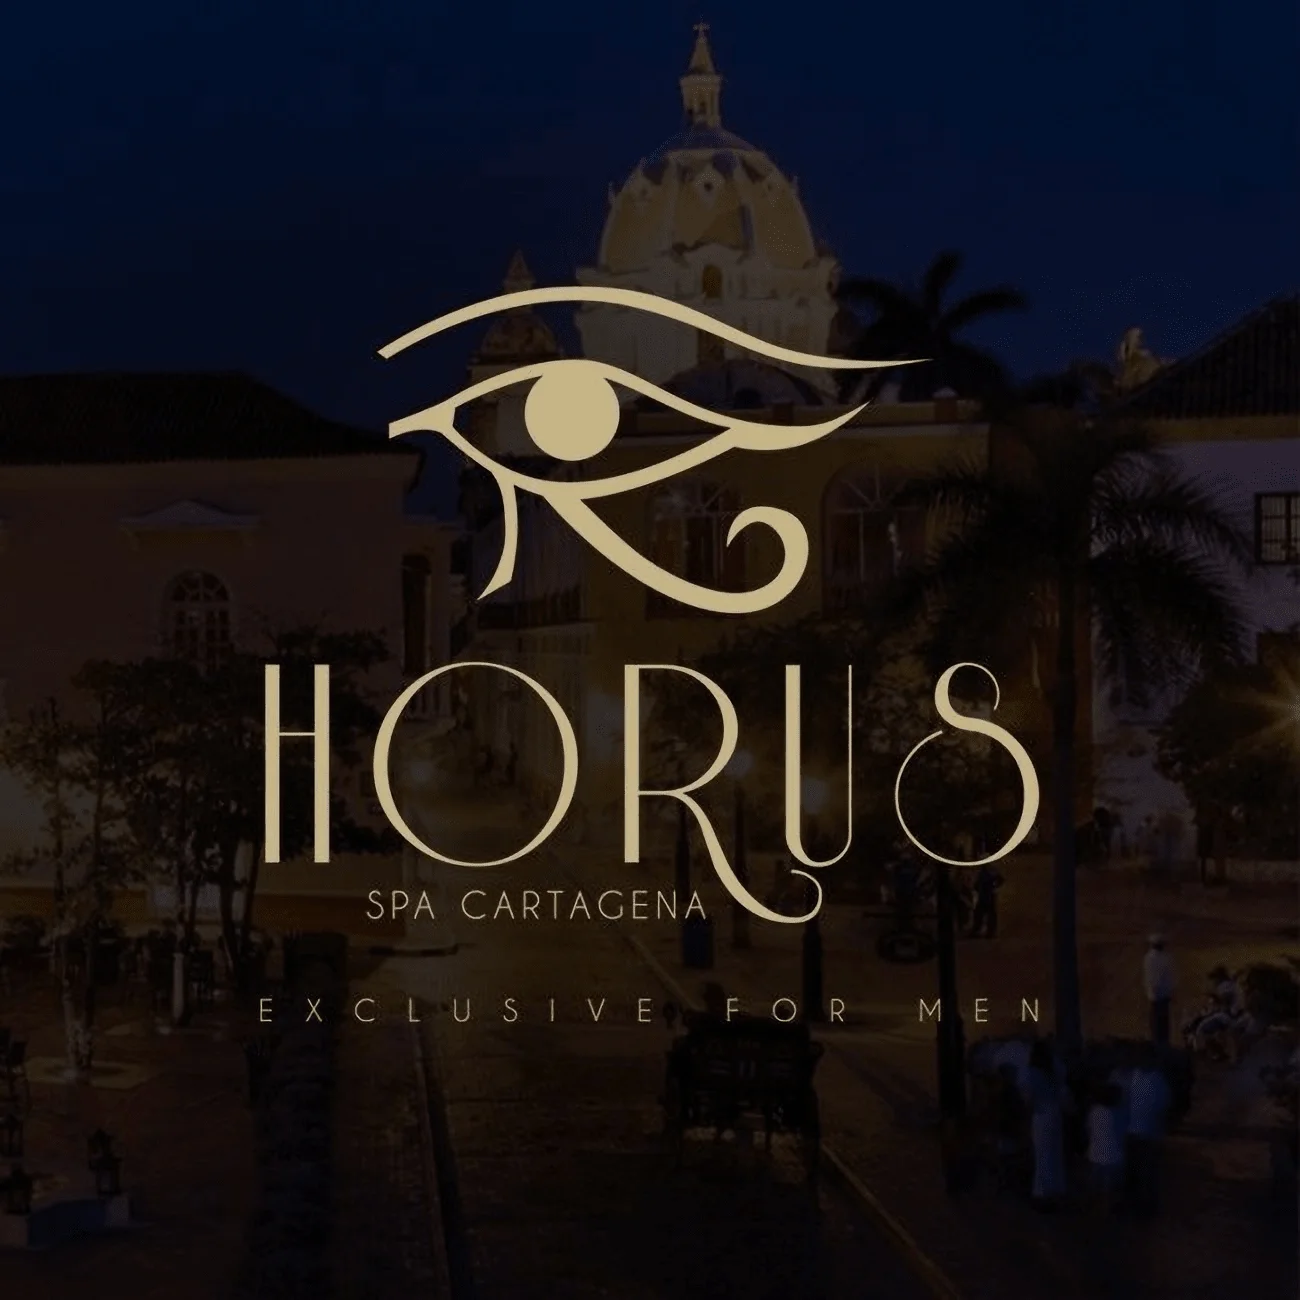 Horus spa for men-805